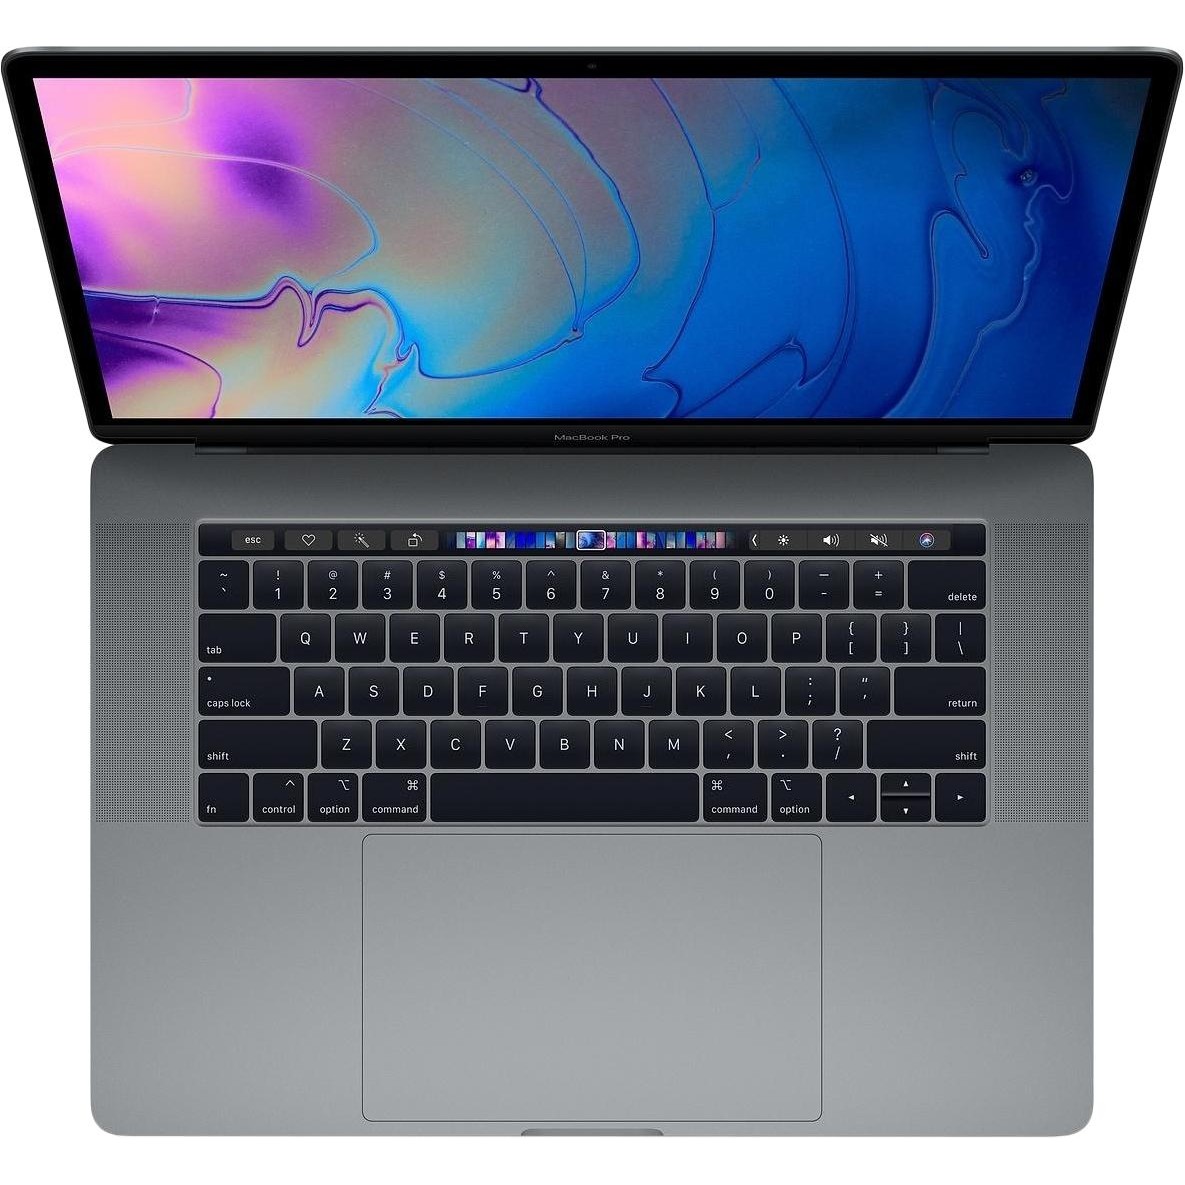  لپ تاپ 15 اینچی اپل مدل MacBook Pro MR952 2018 همراه با تاچ بار 